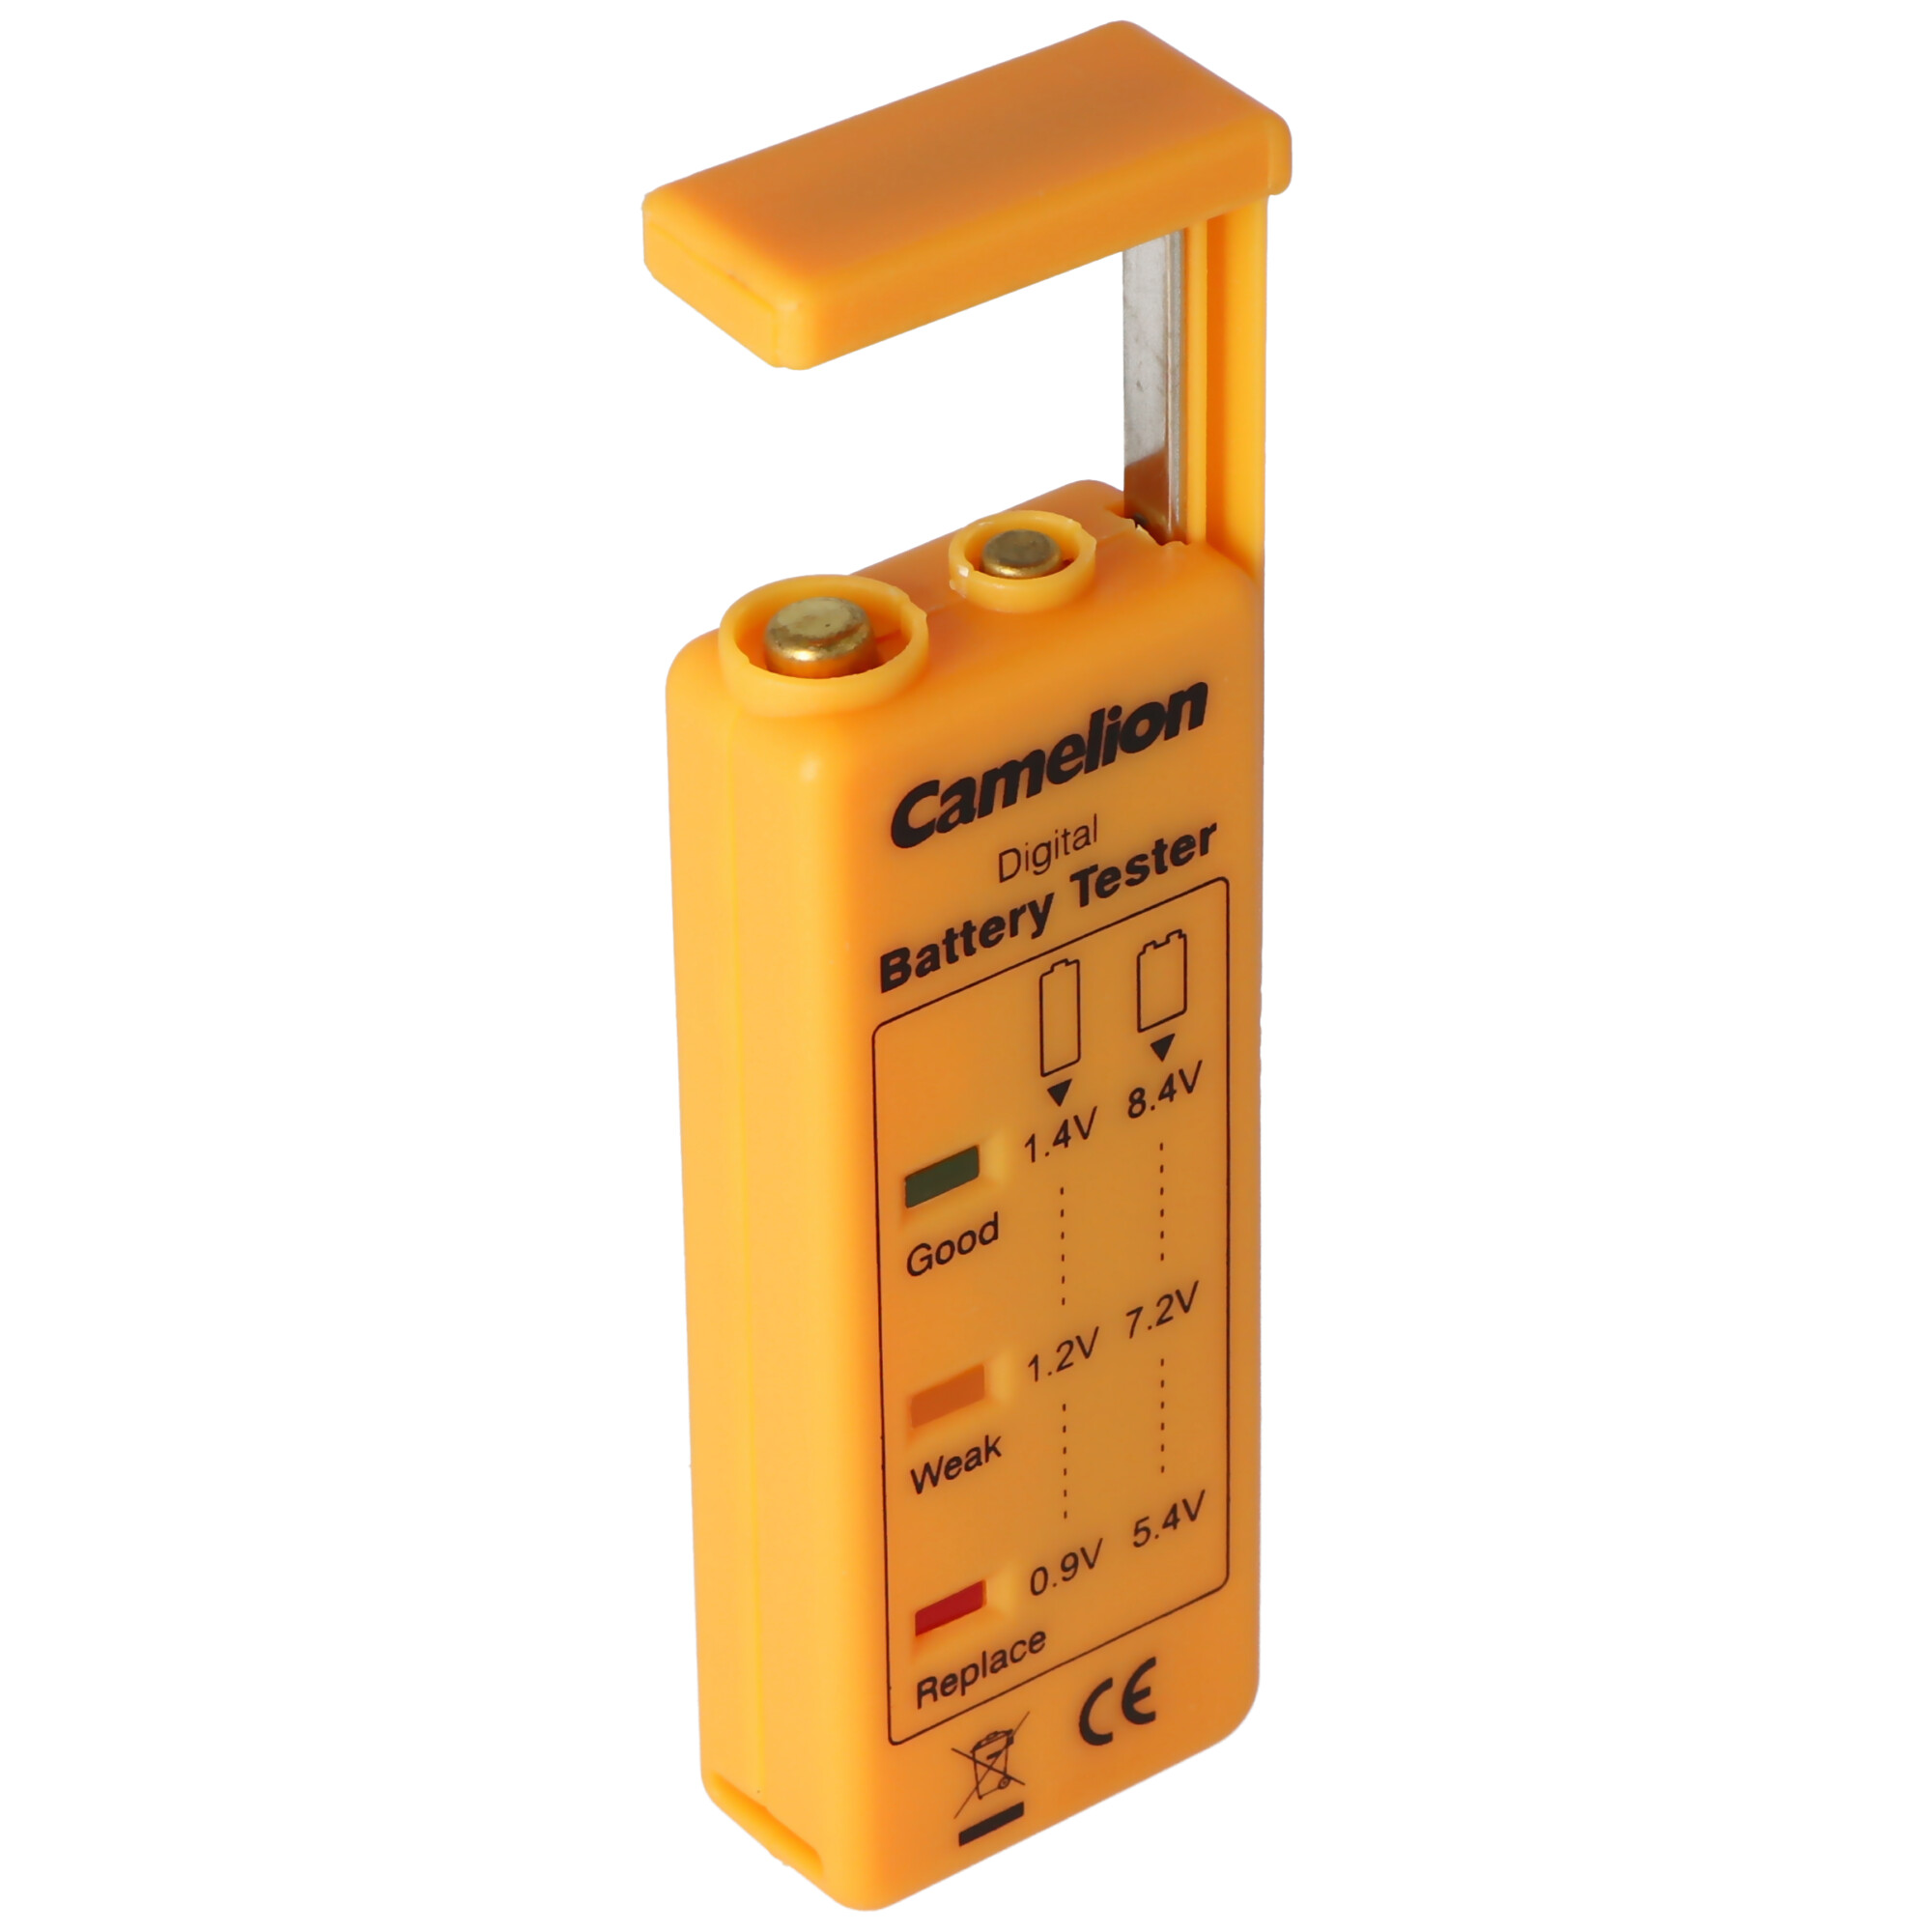 Batterie Tester LED BT-0503 geeignet zum Testen für die Größen AAAA, AAA, AA, C, D und 9V Block